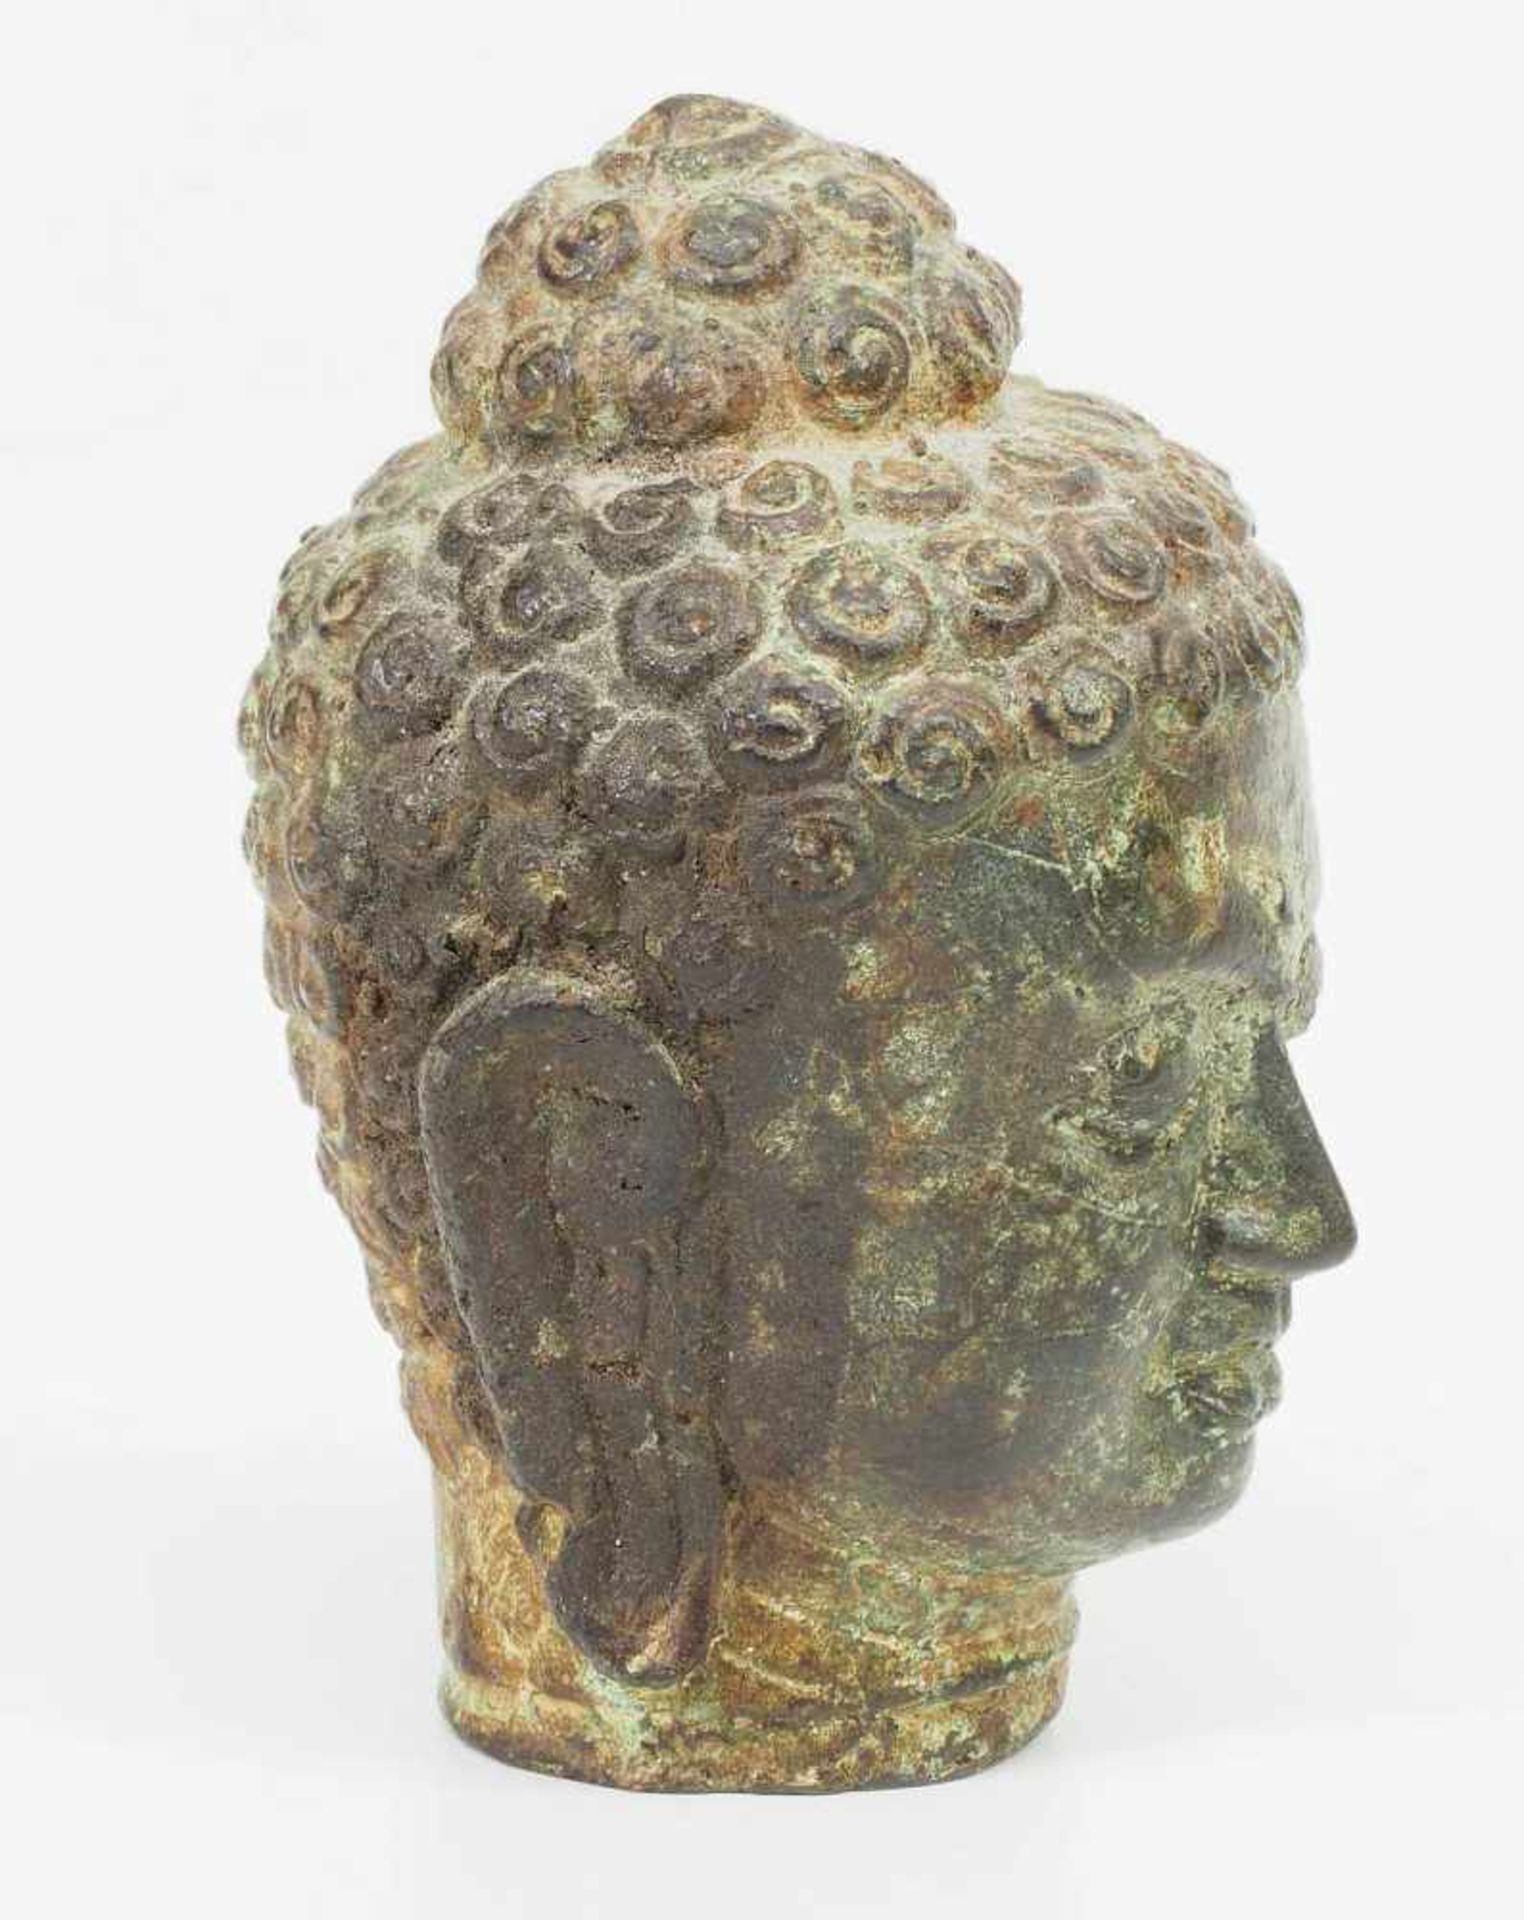 Kleiner Buddha-Kopf. Asien.Kleiner Buddha-Kopf. Asien. Bronze mit Alterspatina, leicht grünlich. - Image 5 of 6